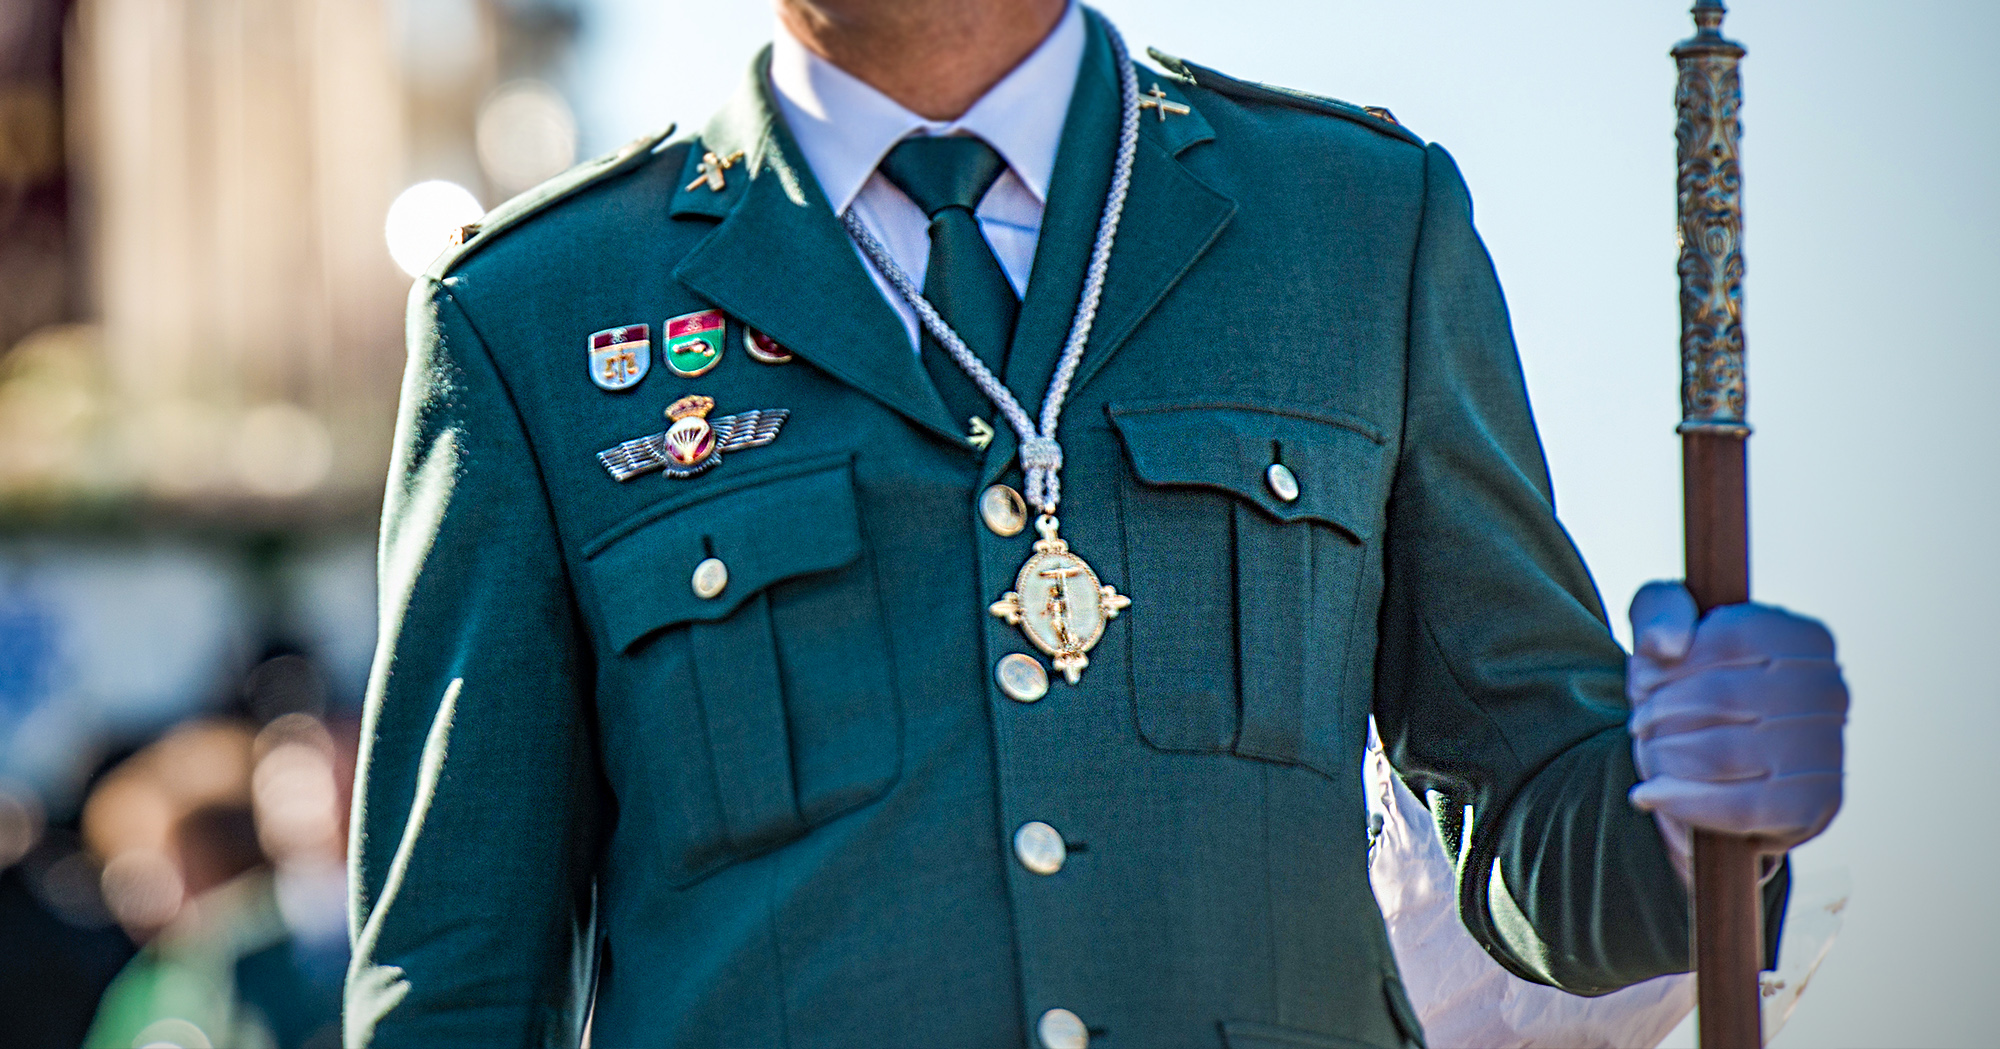 🇪🇸 El Corte Militar: un referente en militar hombre española - El Corte Militar